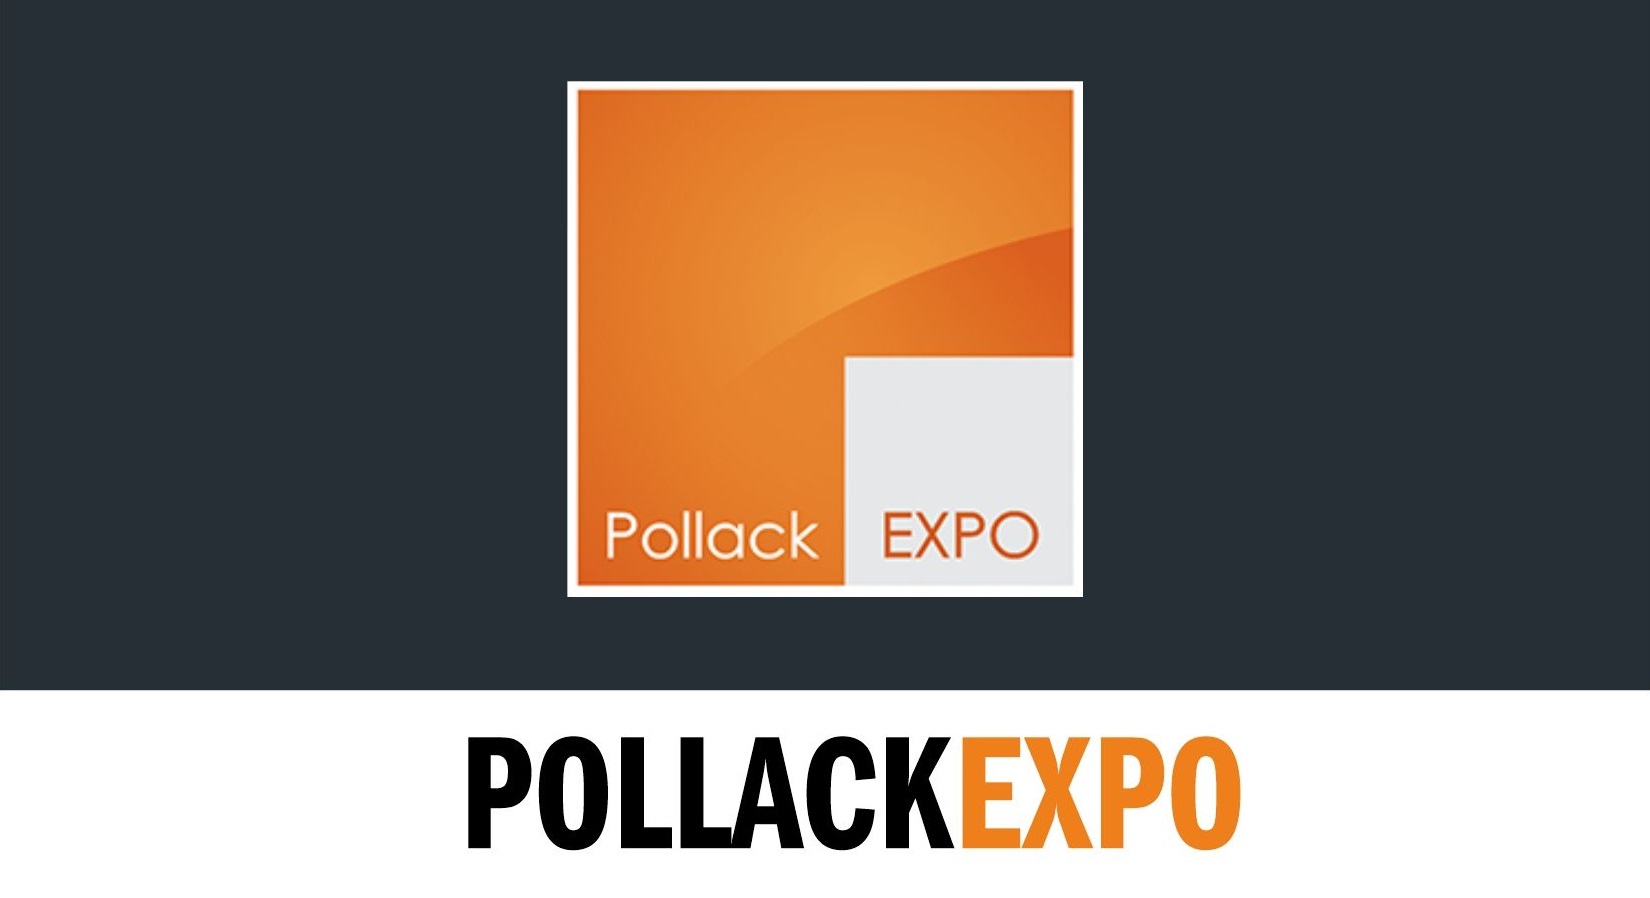 Pollack Expo